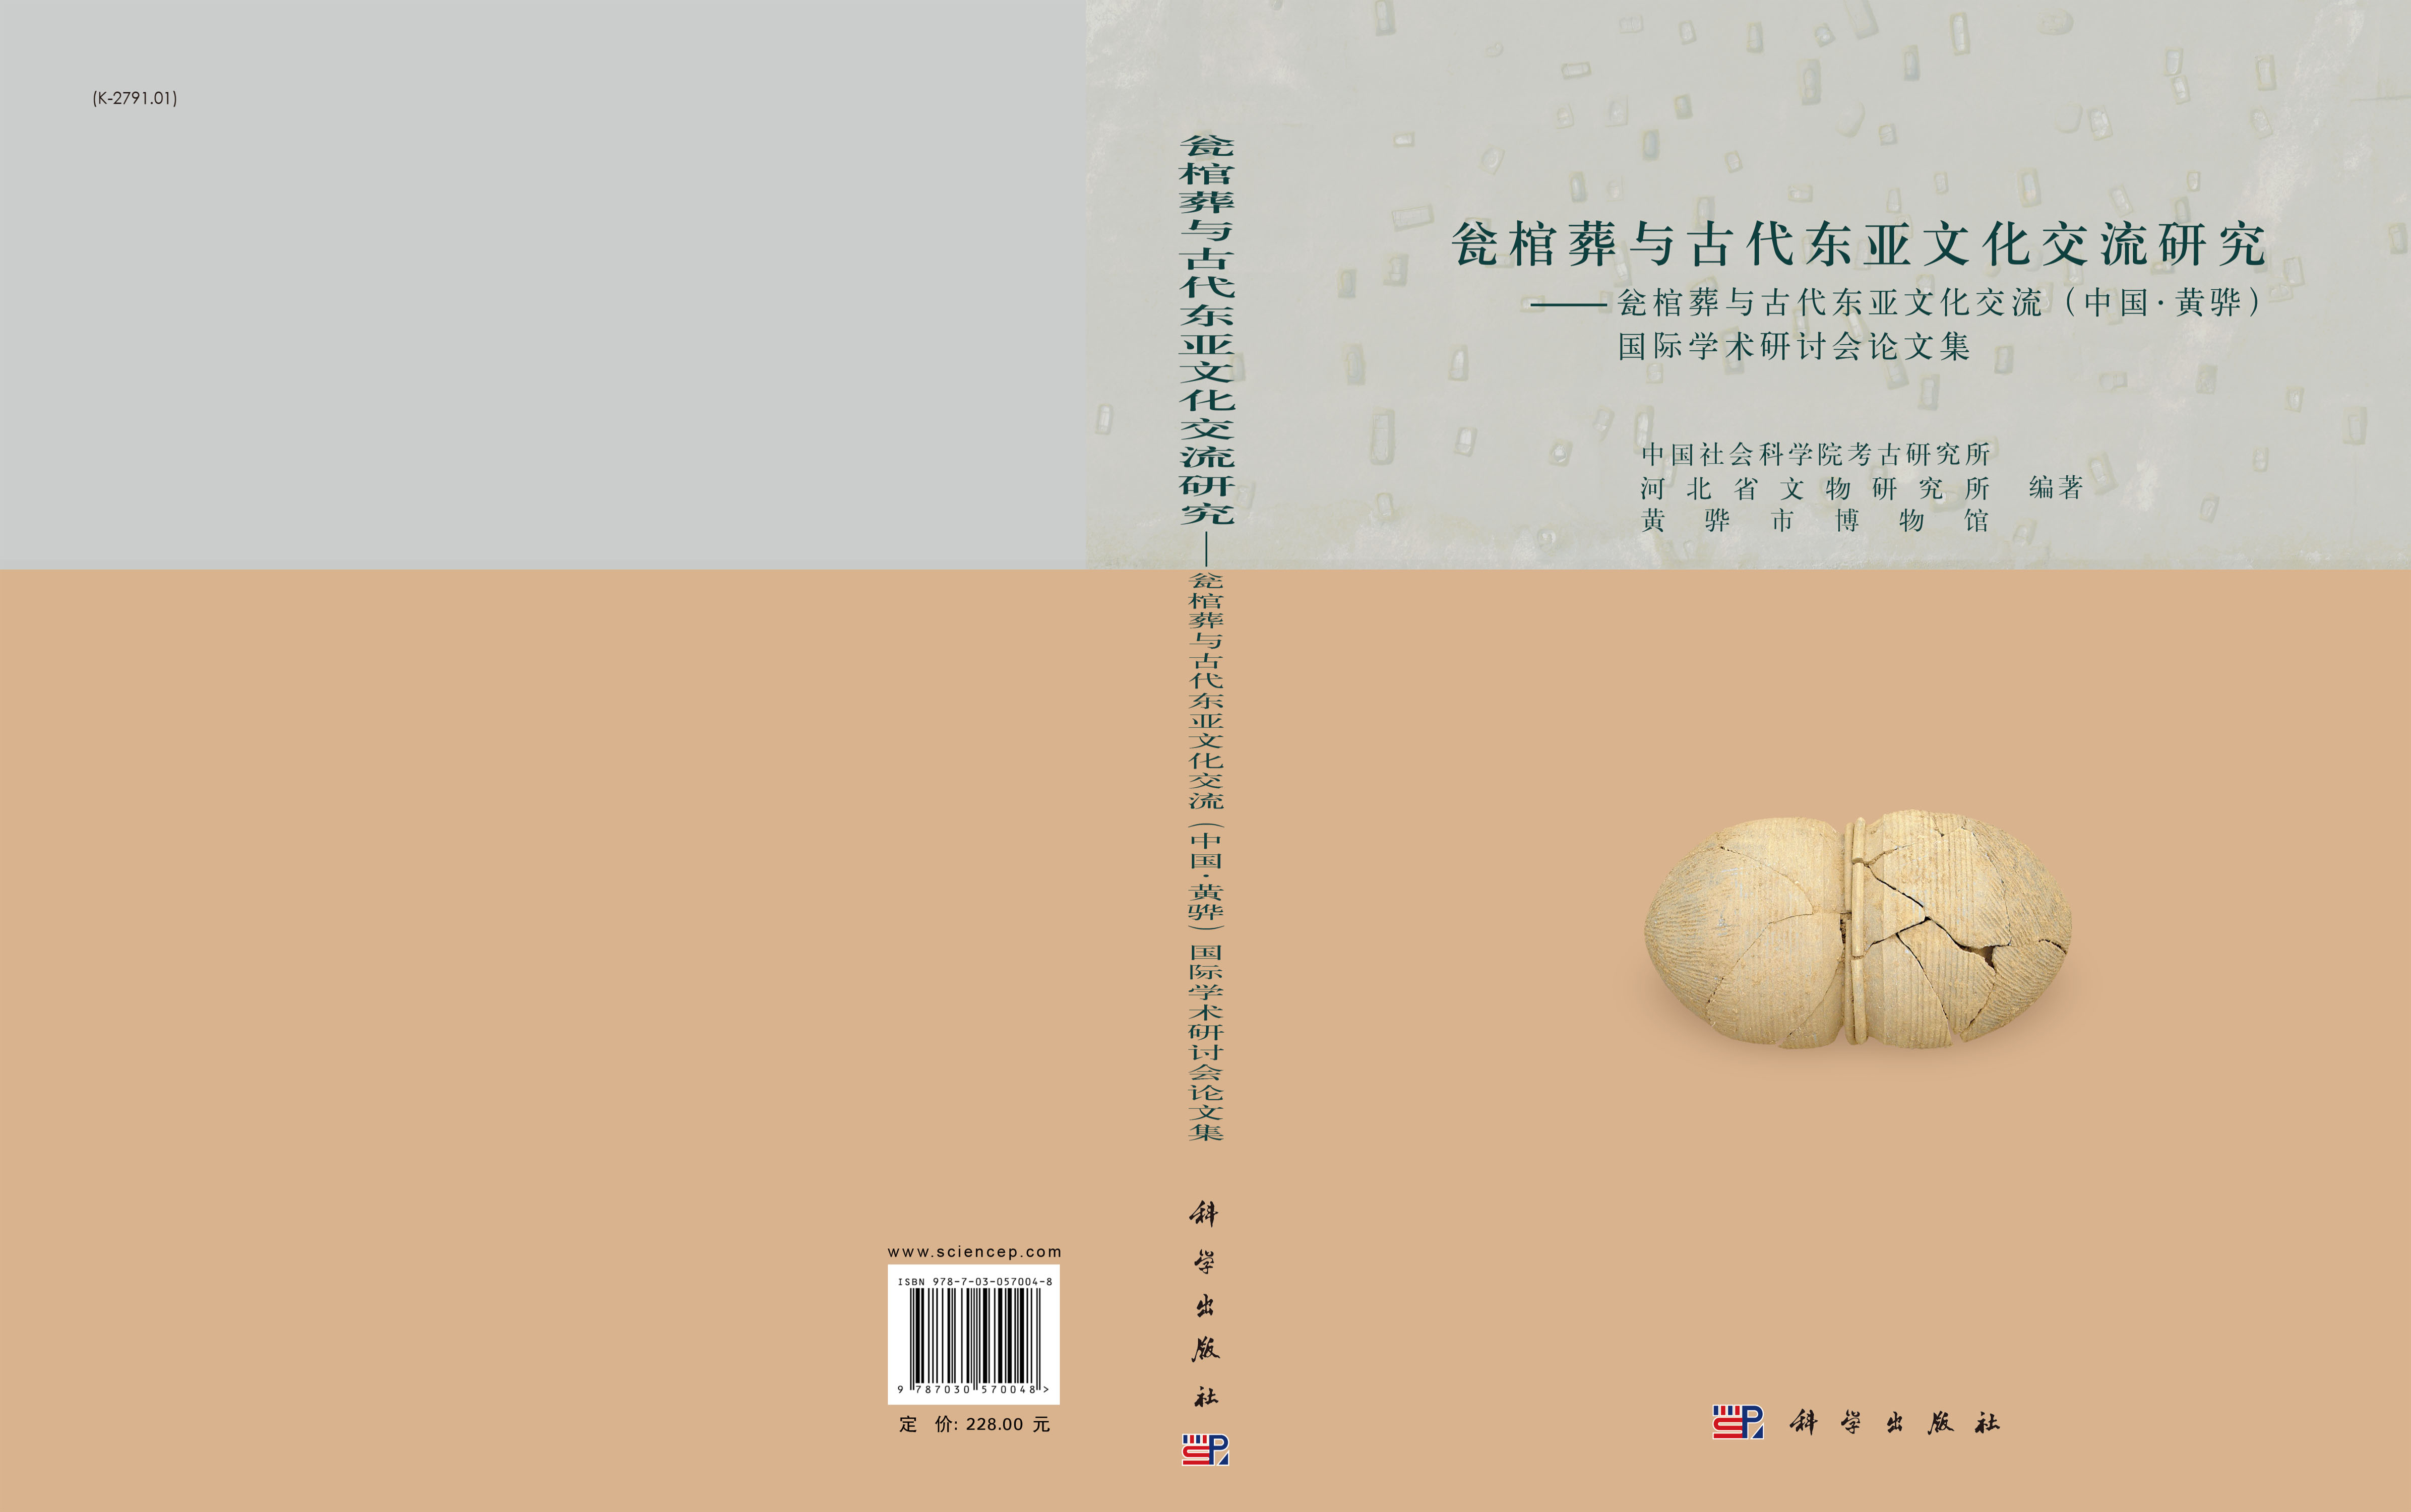 瓮棺葬与古代东亚文化交流研究